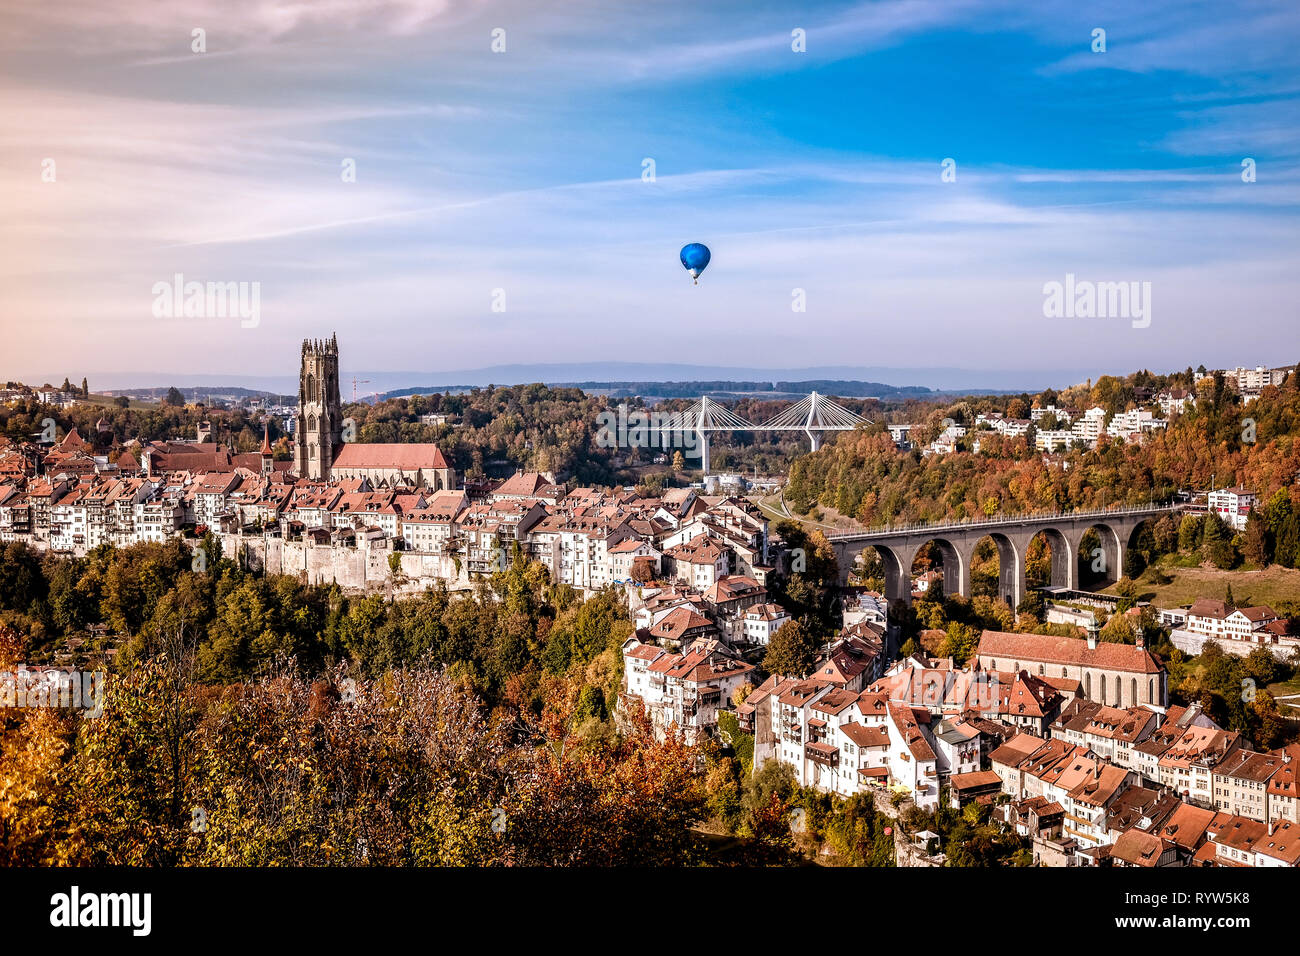 La vista horizontal del casco antiguo de la ciudad de Friburgo y sus alrededores, en Suiza, rodada en el otoño de 2018 Foto de stock